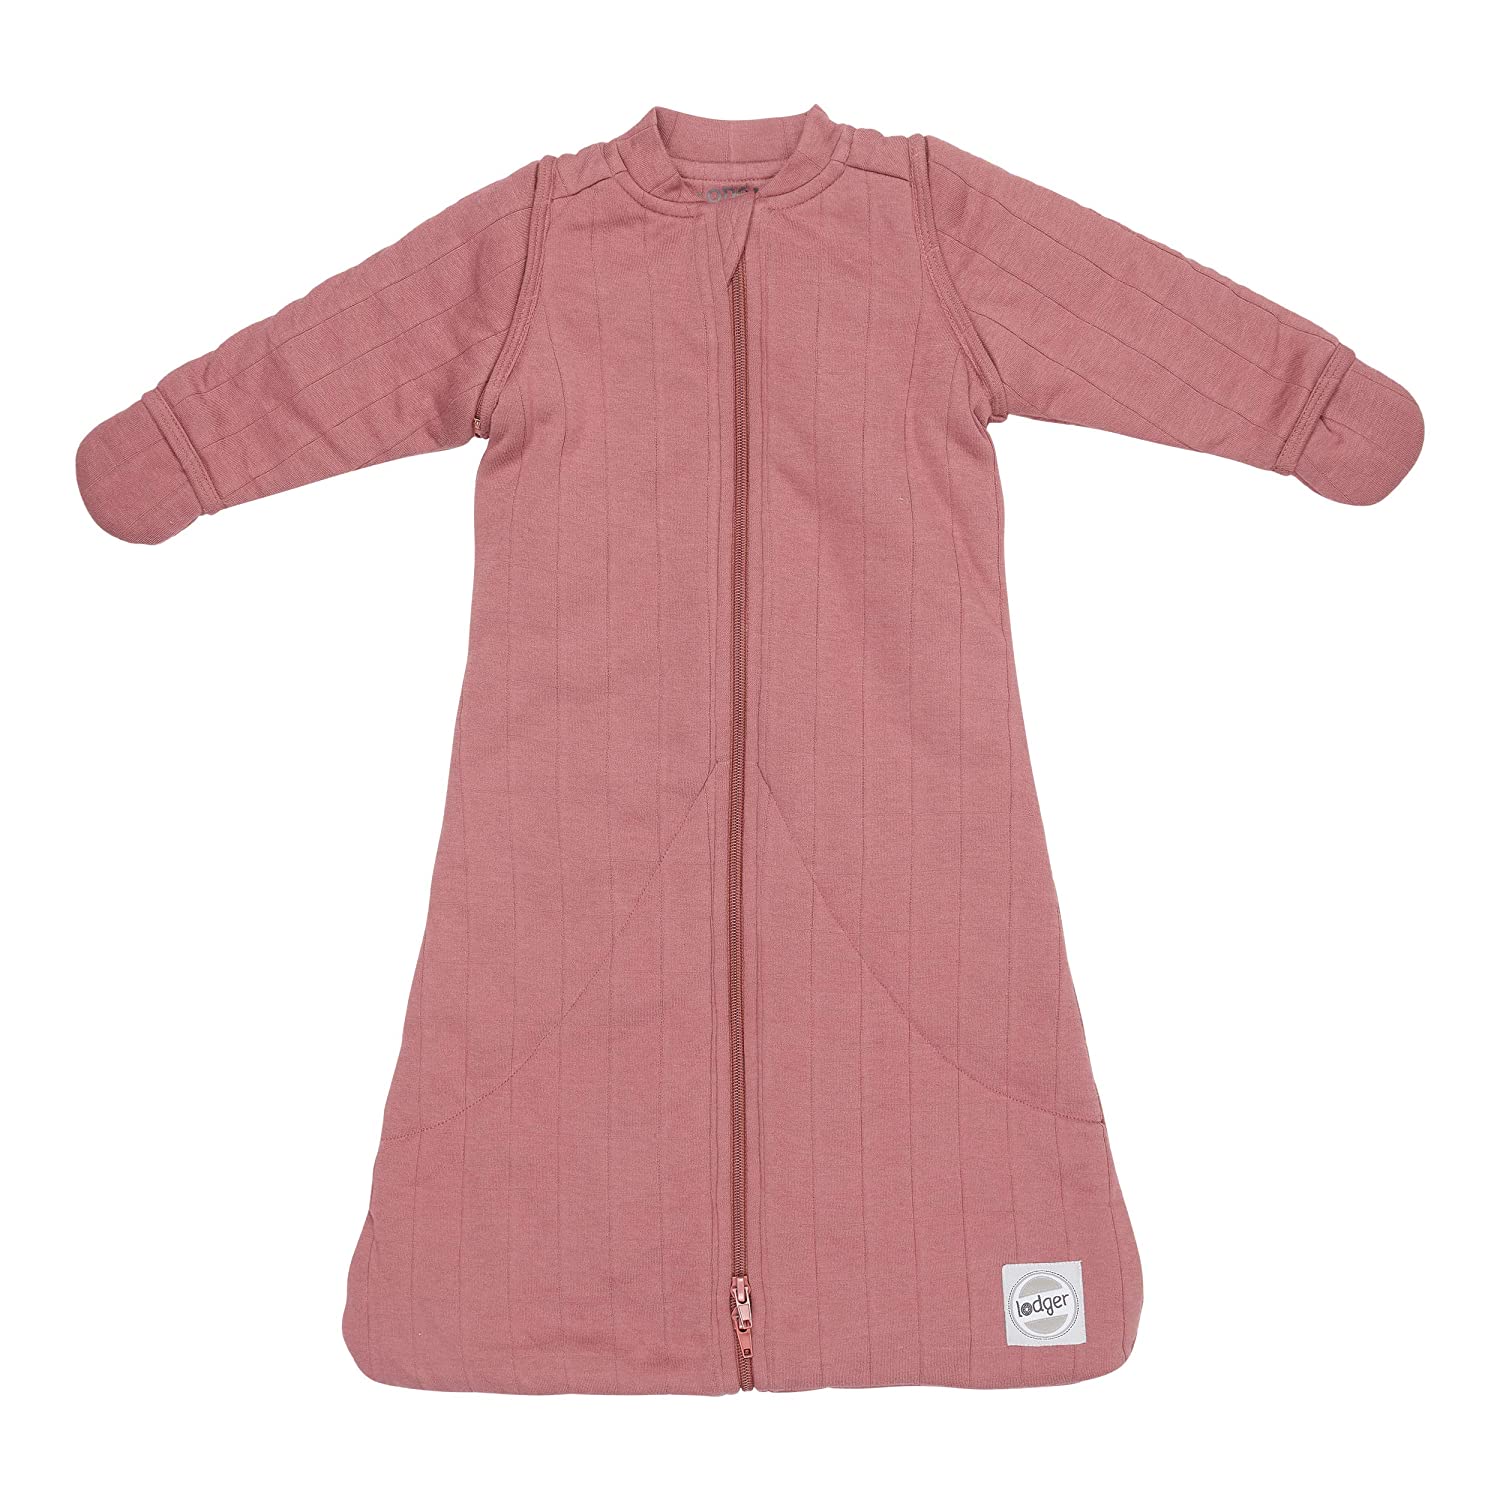 Lodger Hopper Baby Sleeping Bag with Sleeves Dark Pink 50/62